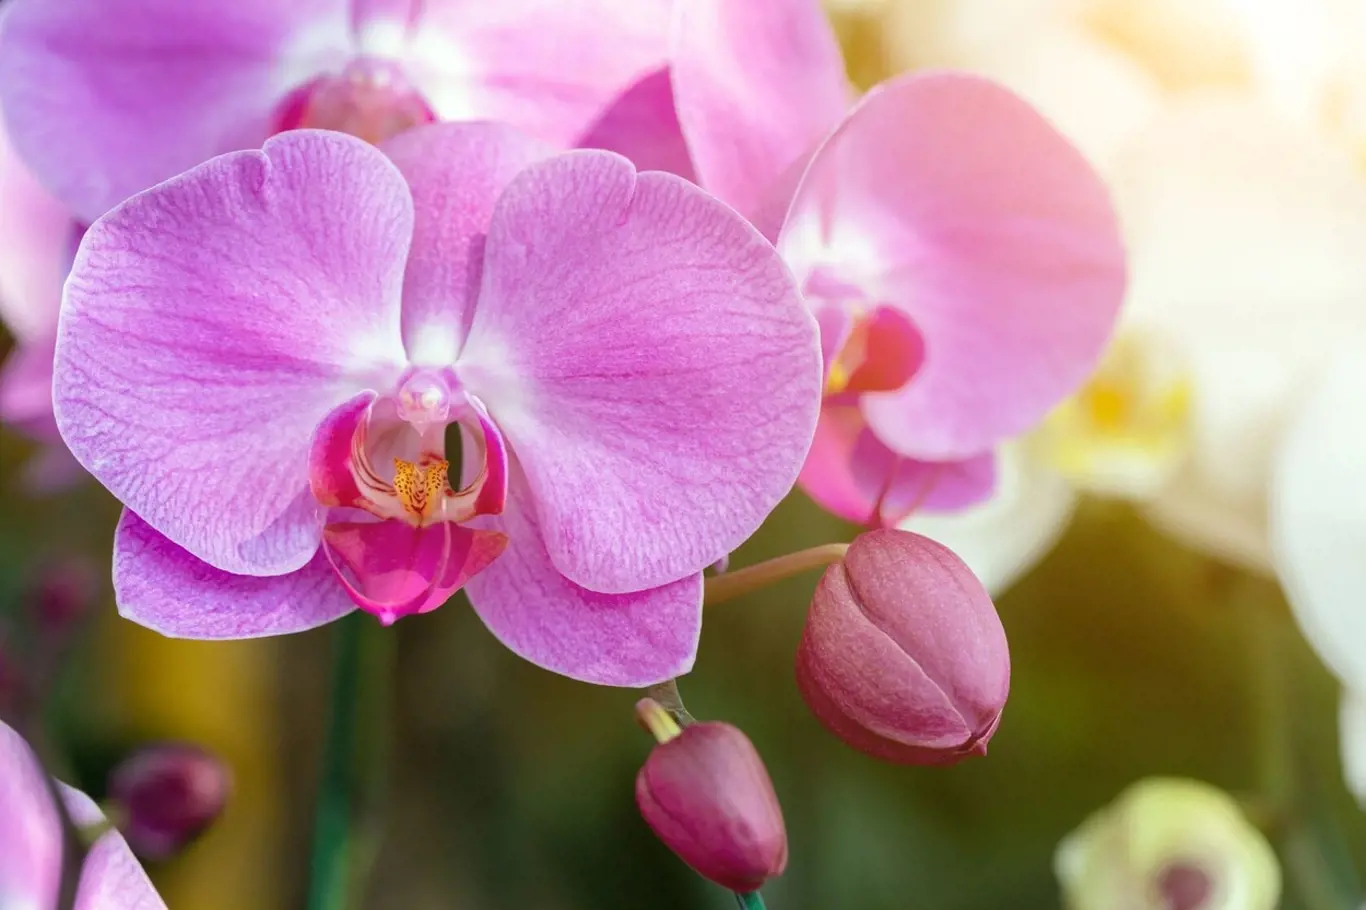 Chcete krásně kvetoucí a zdravé orchideje? Uvařte jim banánový čaj!